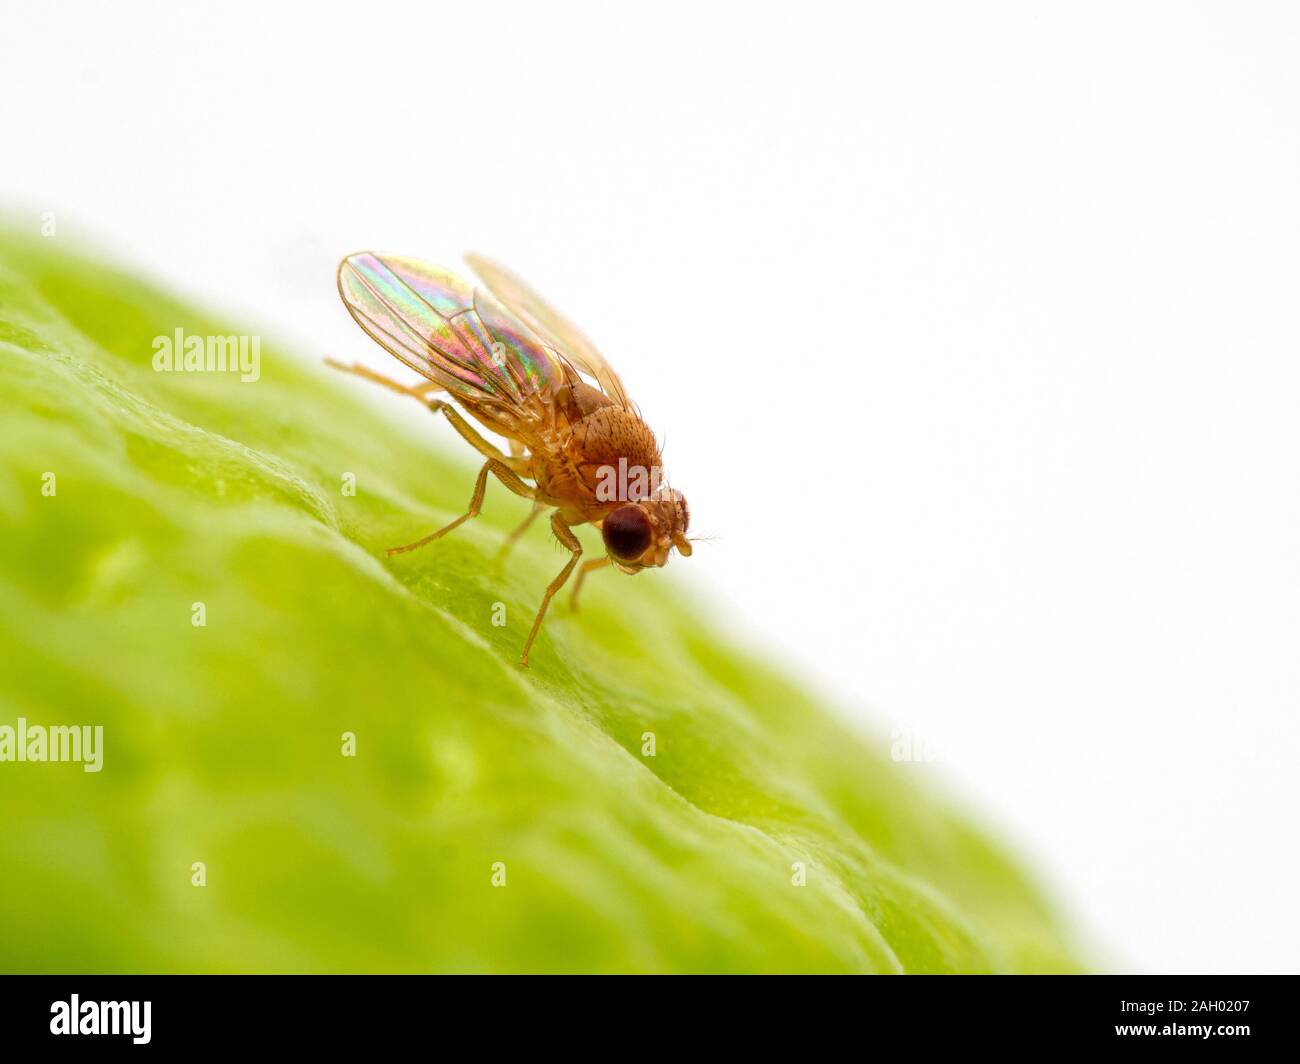 Mosca della frutta, Drosophila hydei, in appoggio sulla superficie di un lime durante la pulizia della sua faccia. Questa è una specie più grandi di Drosophila mosca della frutta Foto Stock